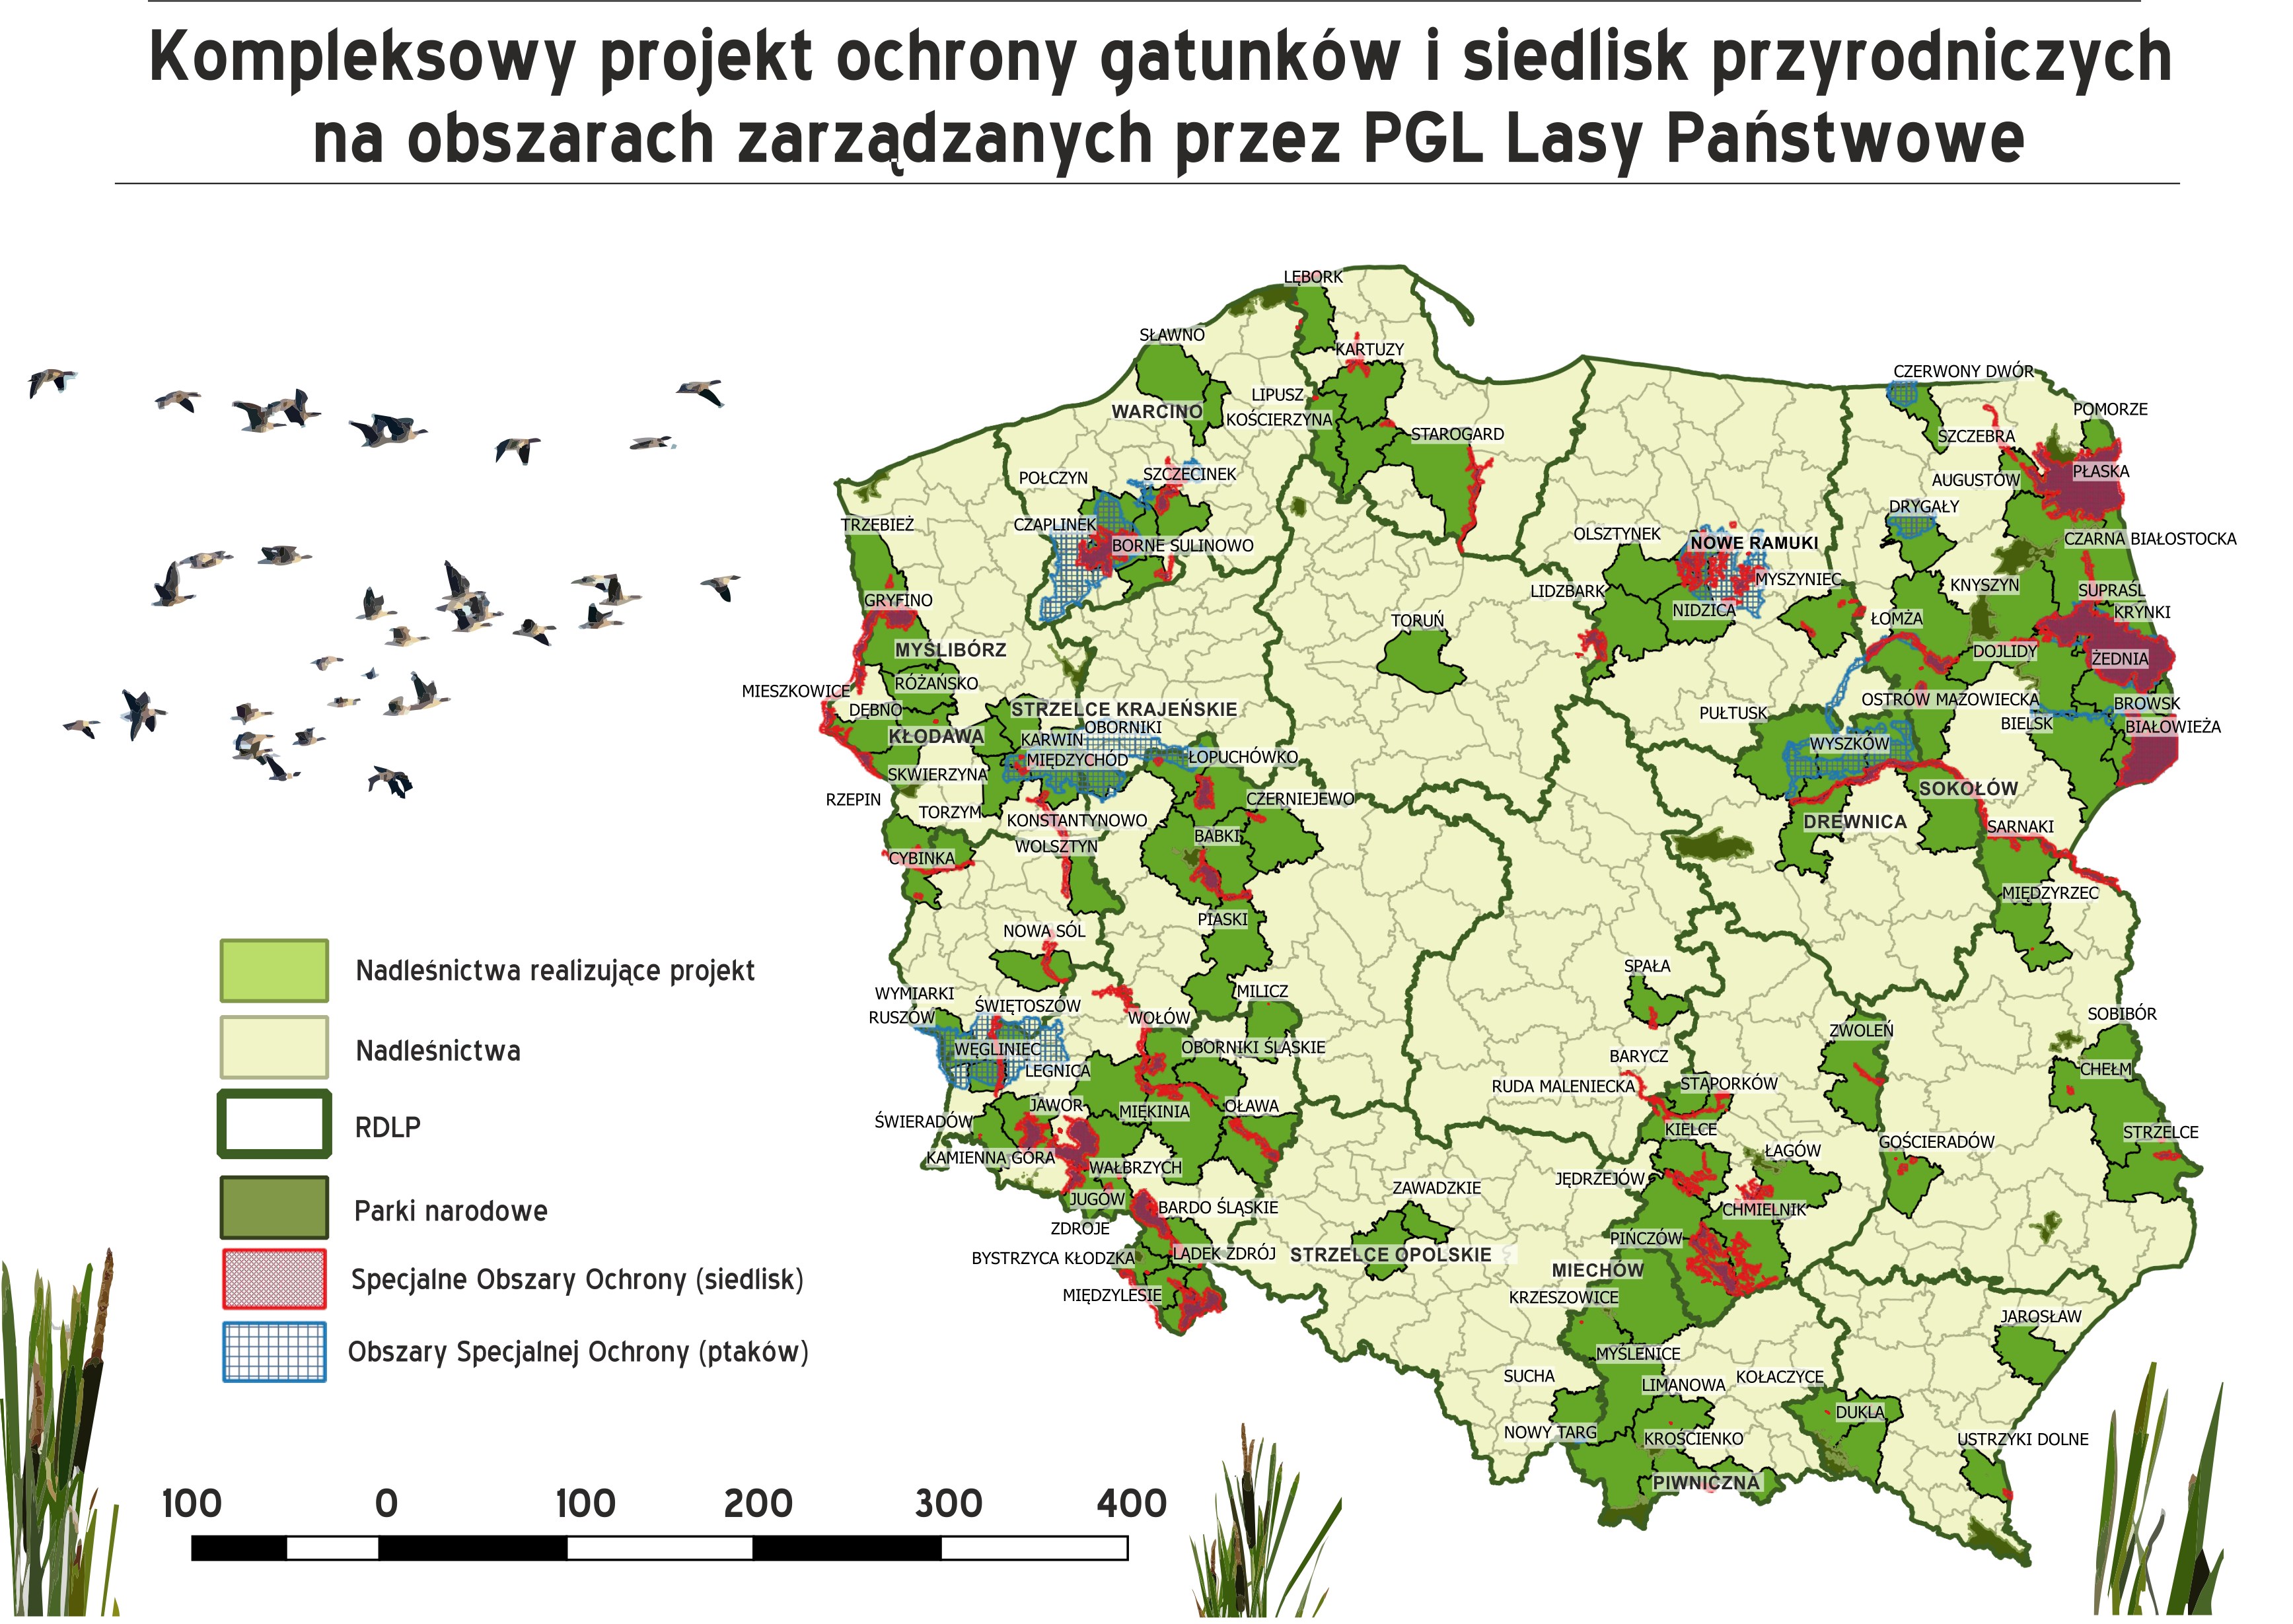 Zdjęcie przedstawia mapę Polski z zaznaczonymi na zielono nadleśnictwami, które wzięły udział w projekcie. Źródło: CKPŚ